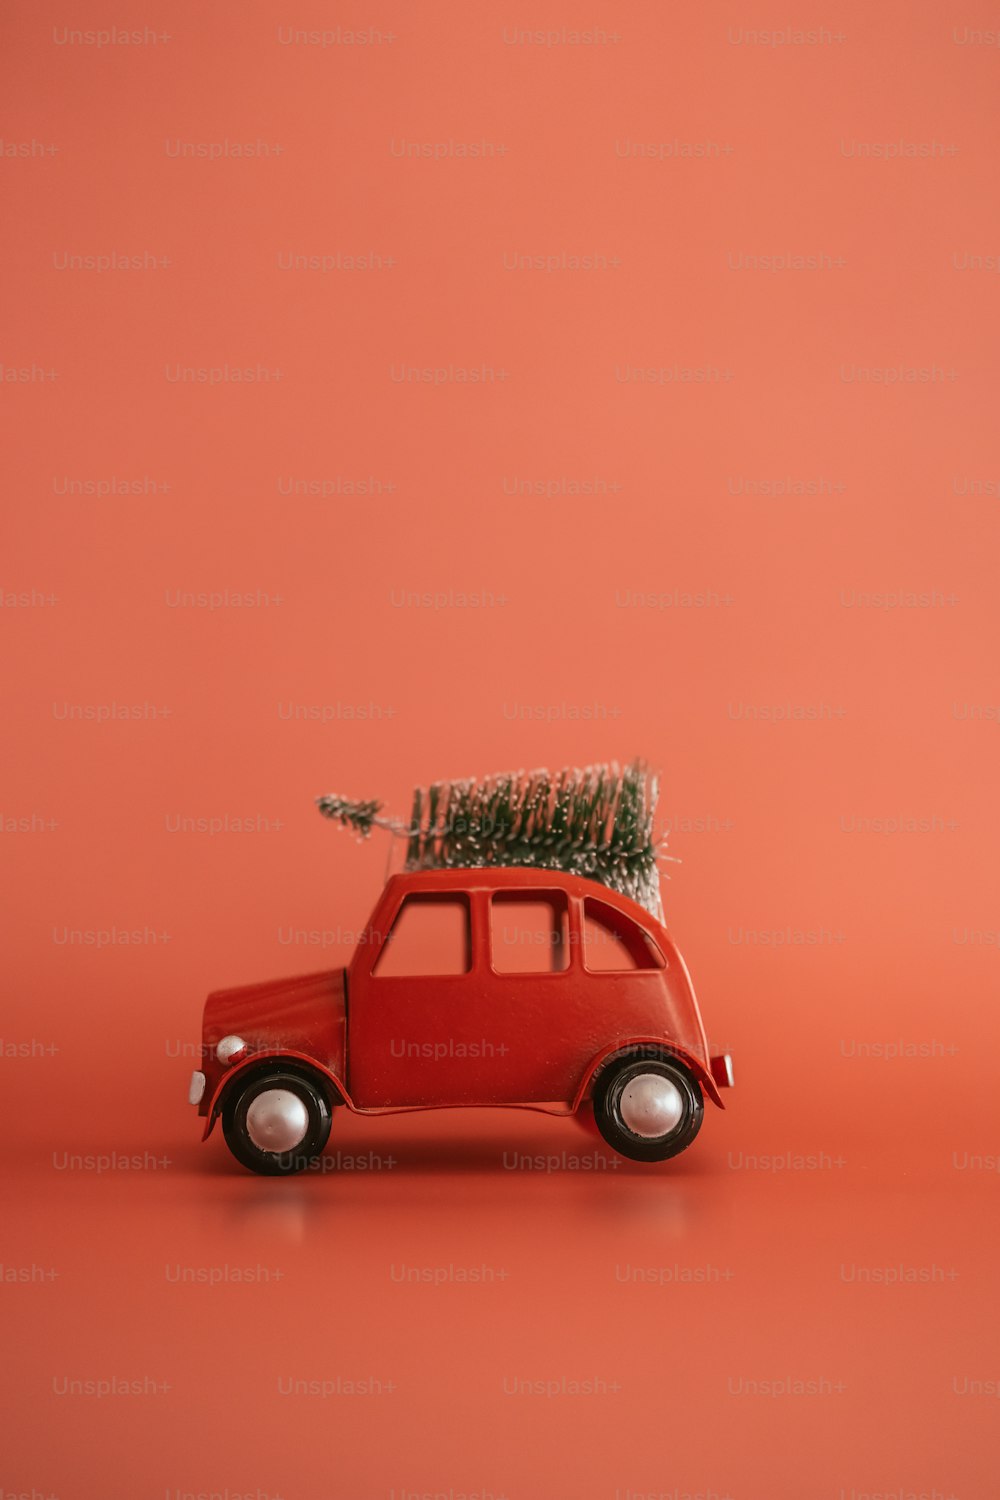 Ein kleines rotes Auto mit einem Weihnachtsbaum oben drauf